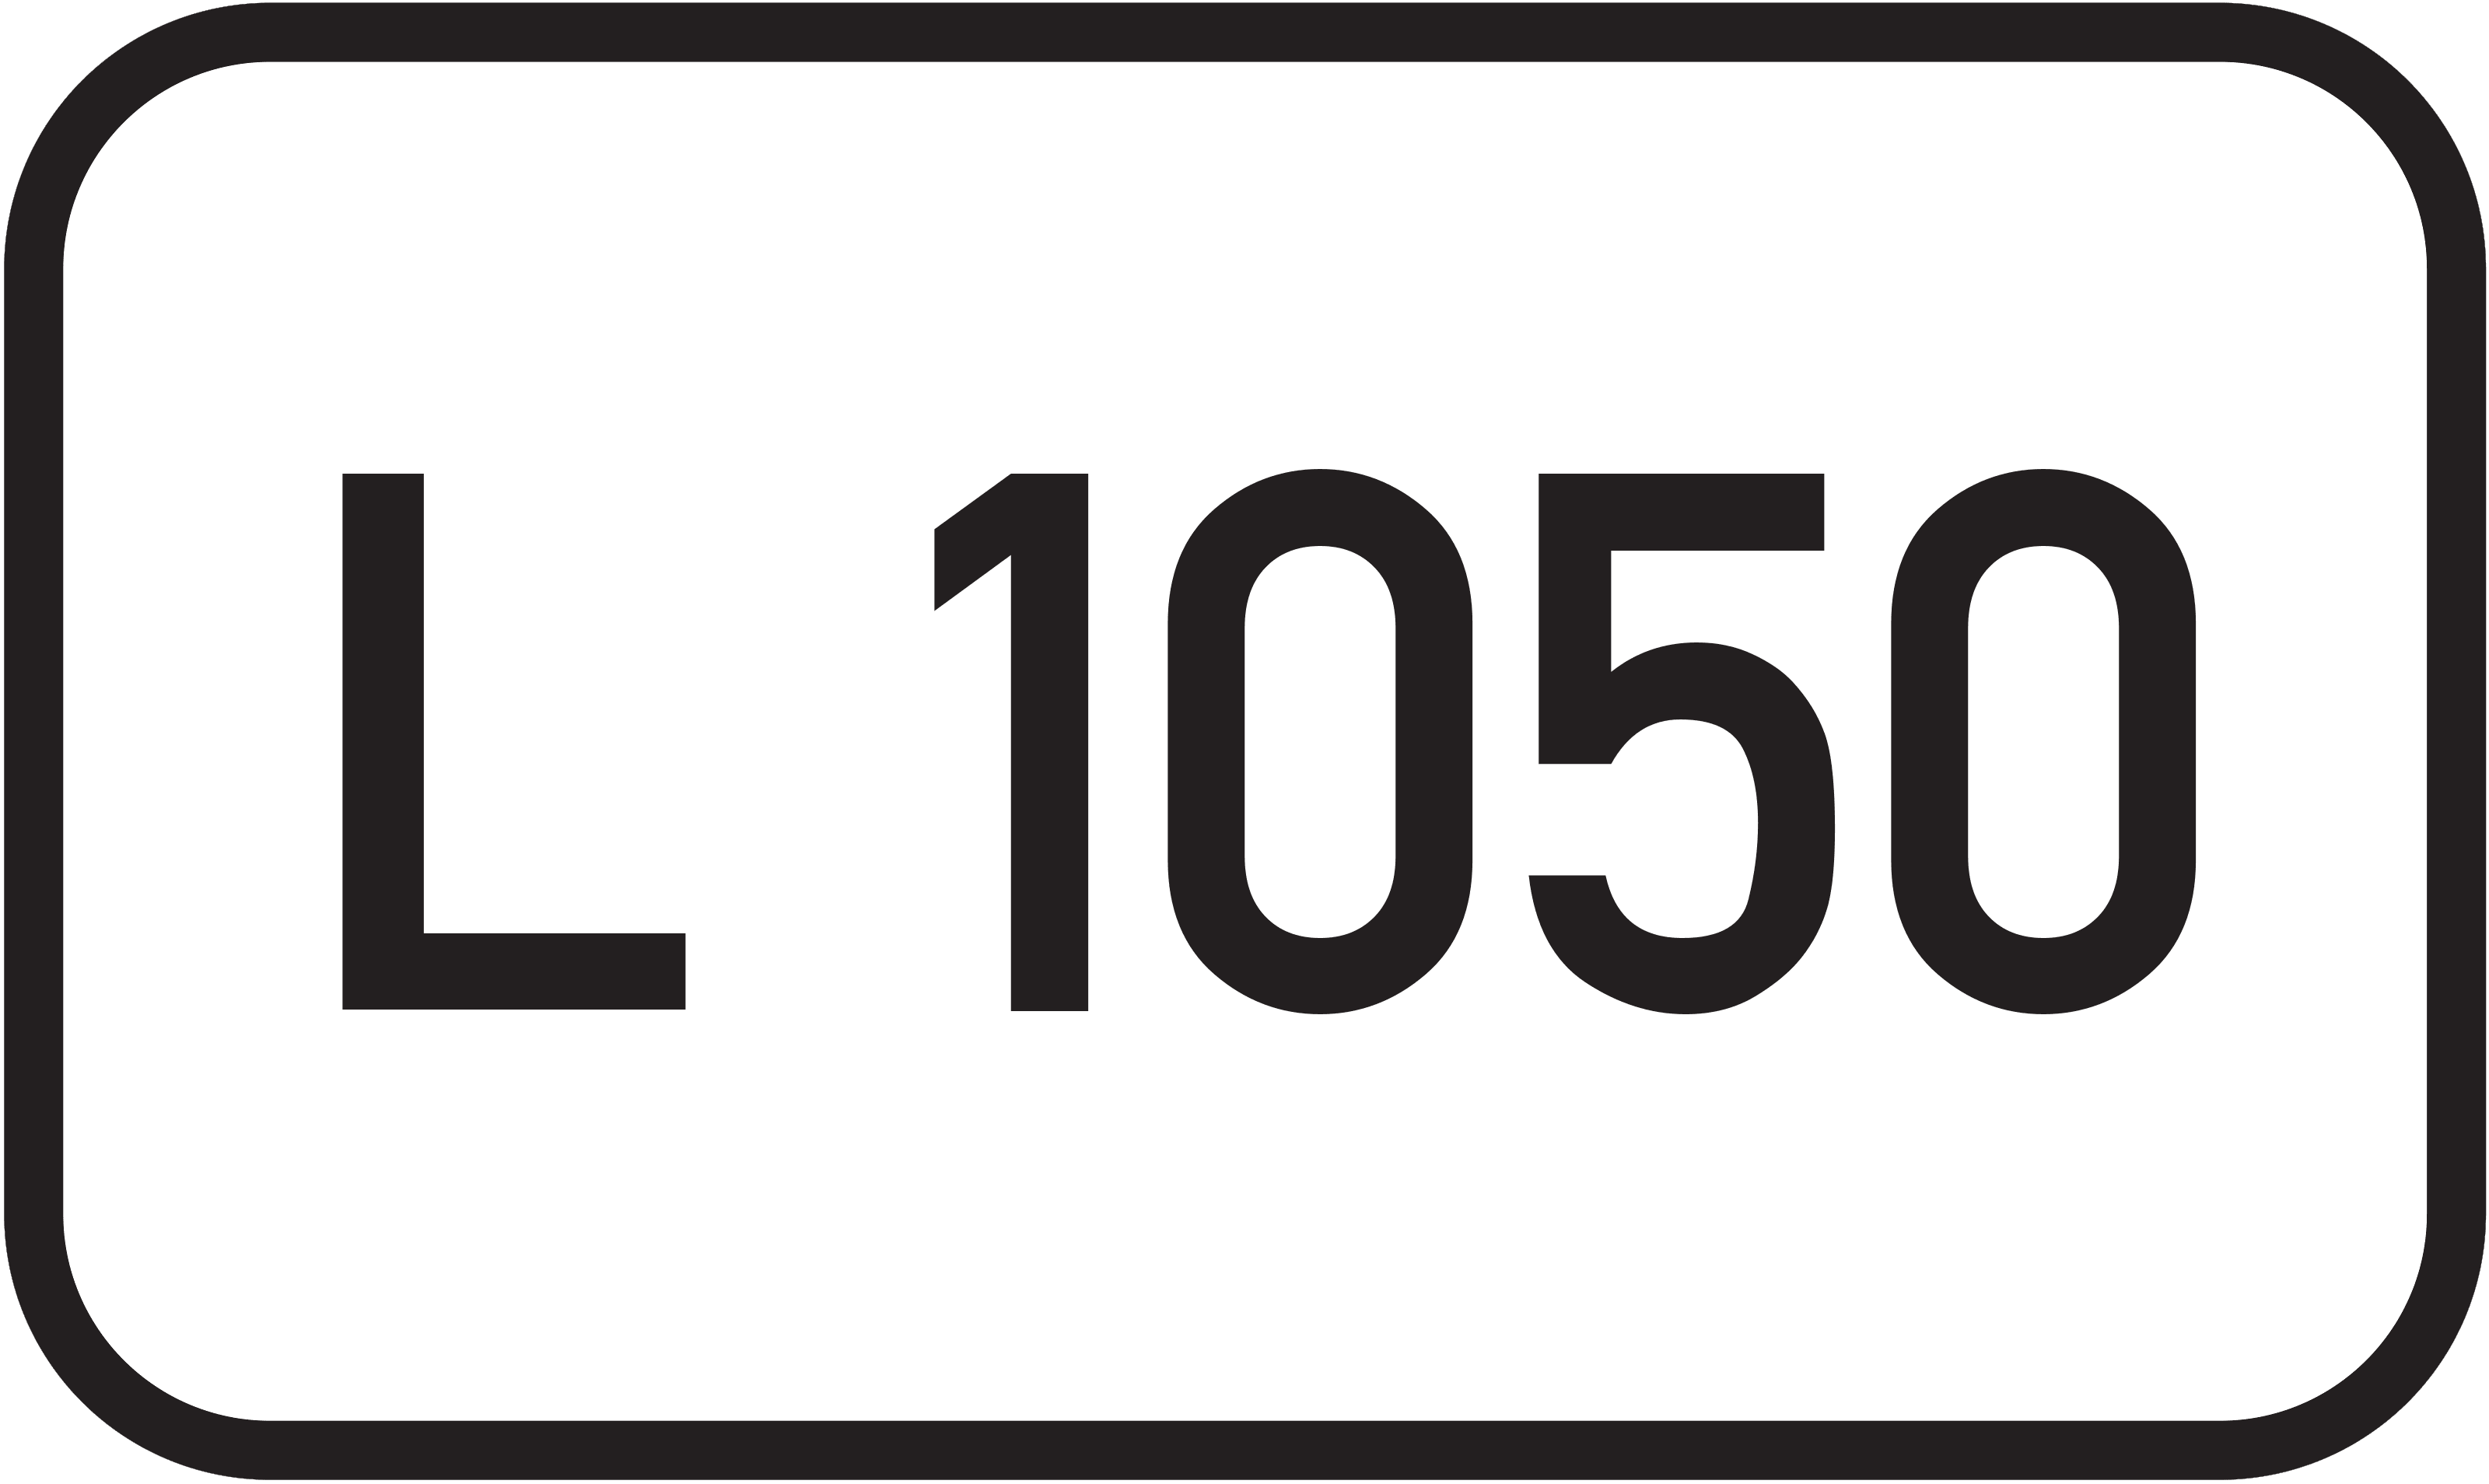 Landesstraße L 1050